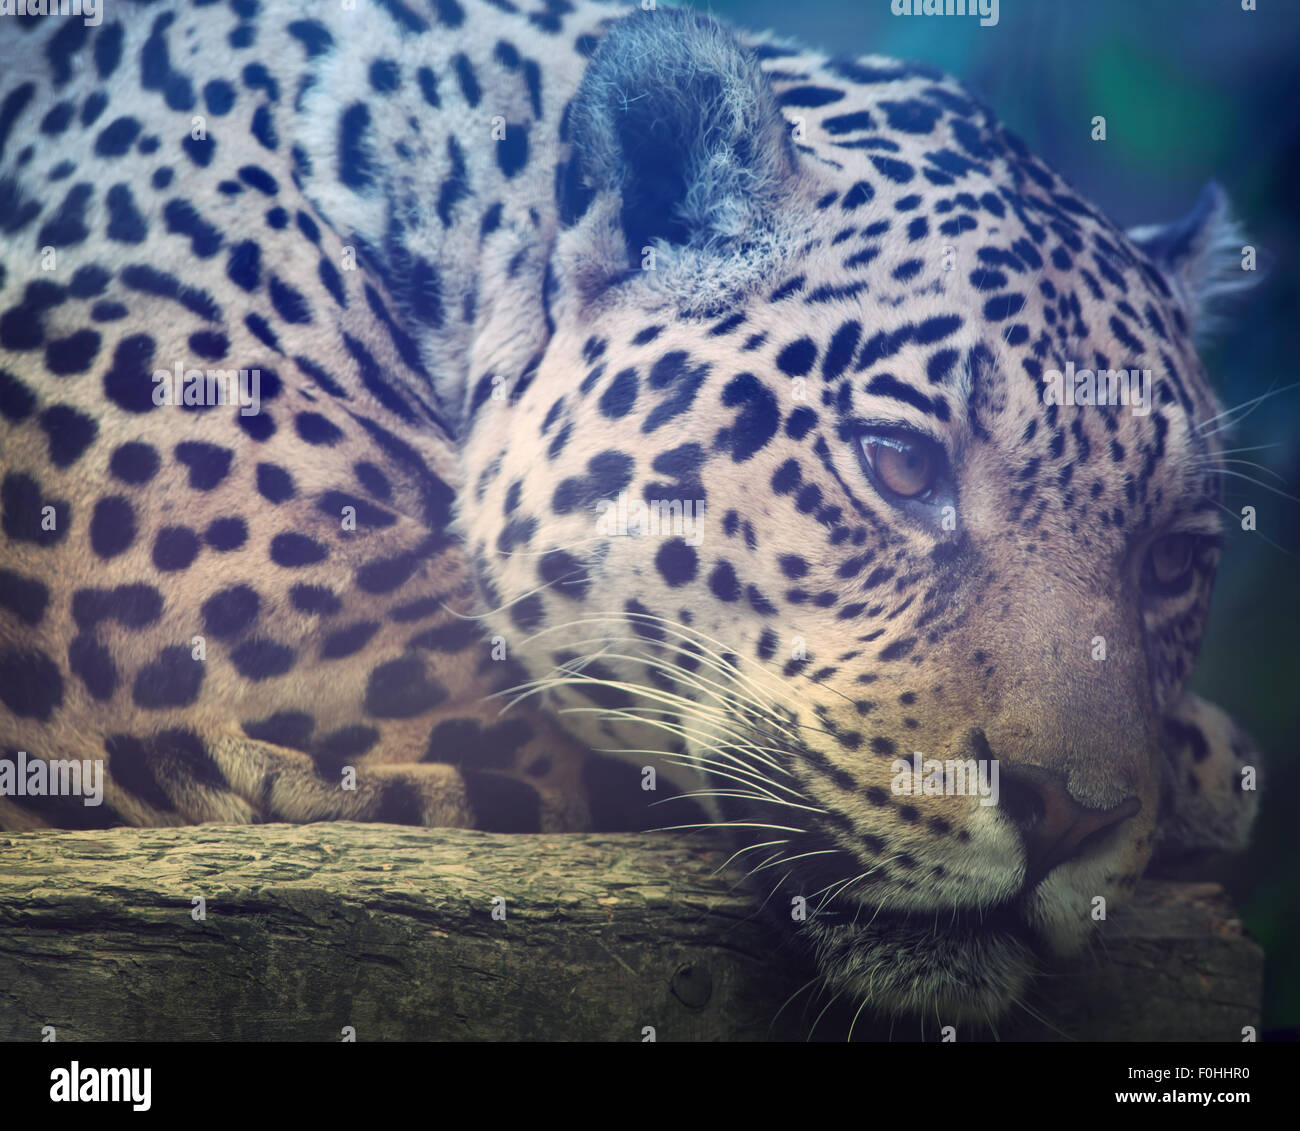 Close up shot of a Jaguars face Stock Photo